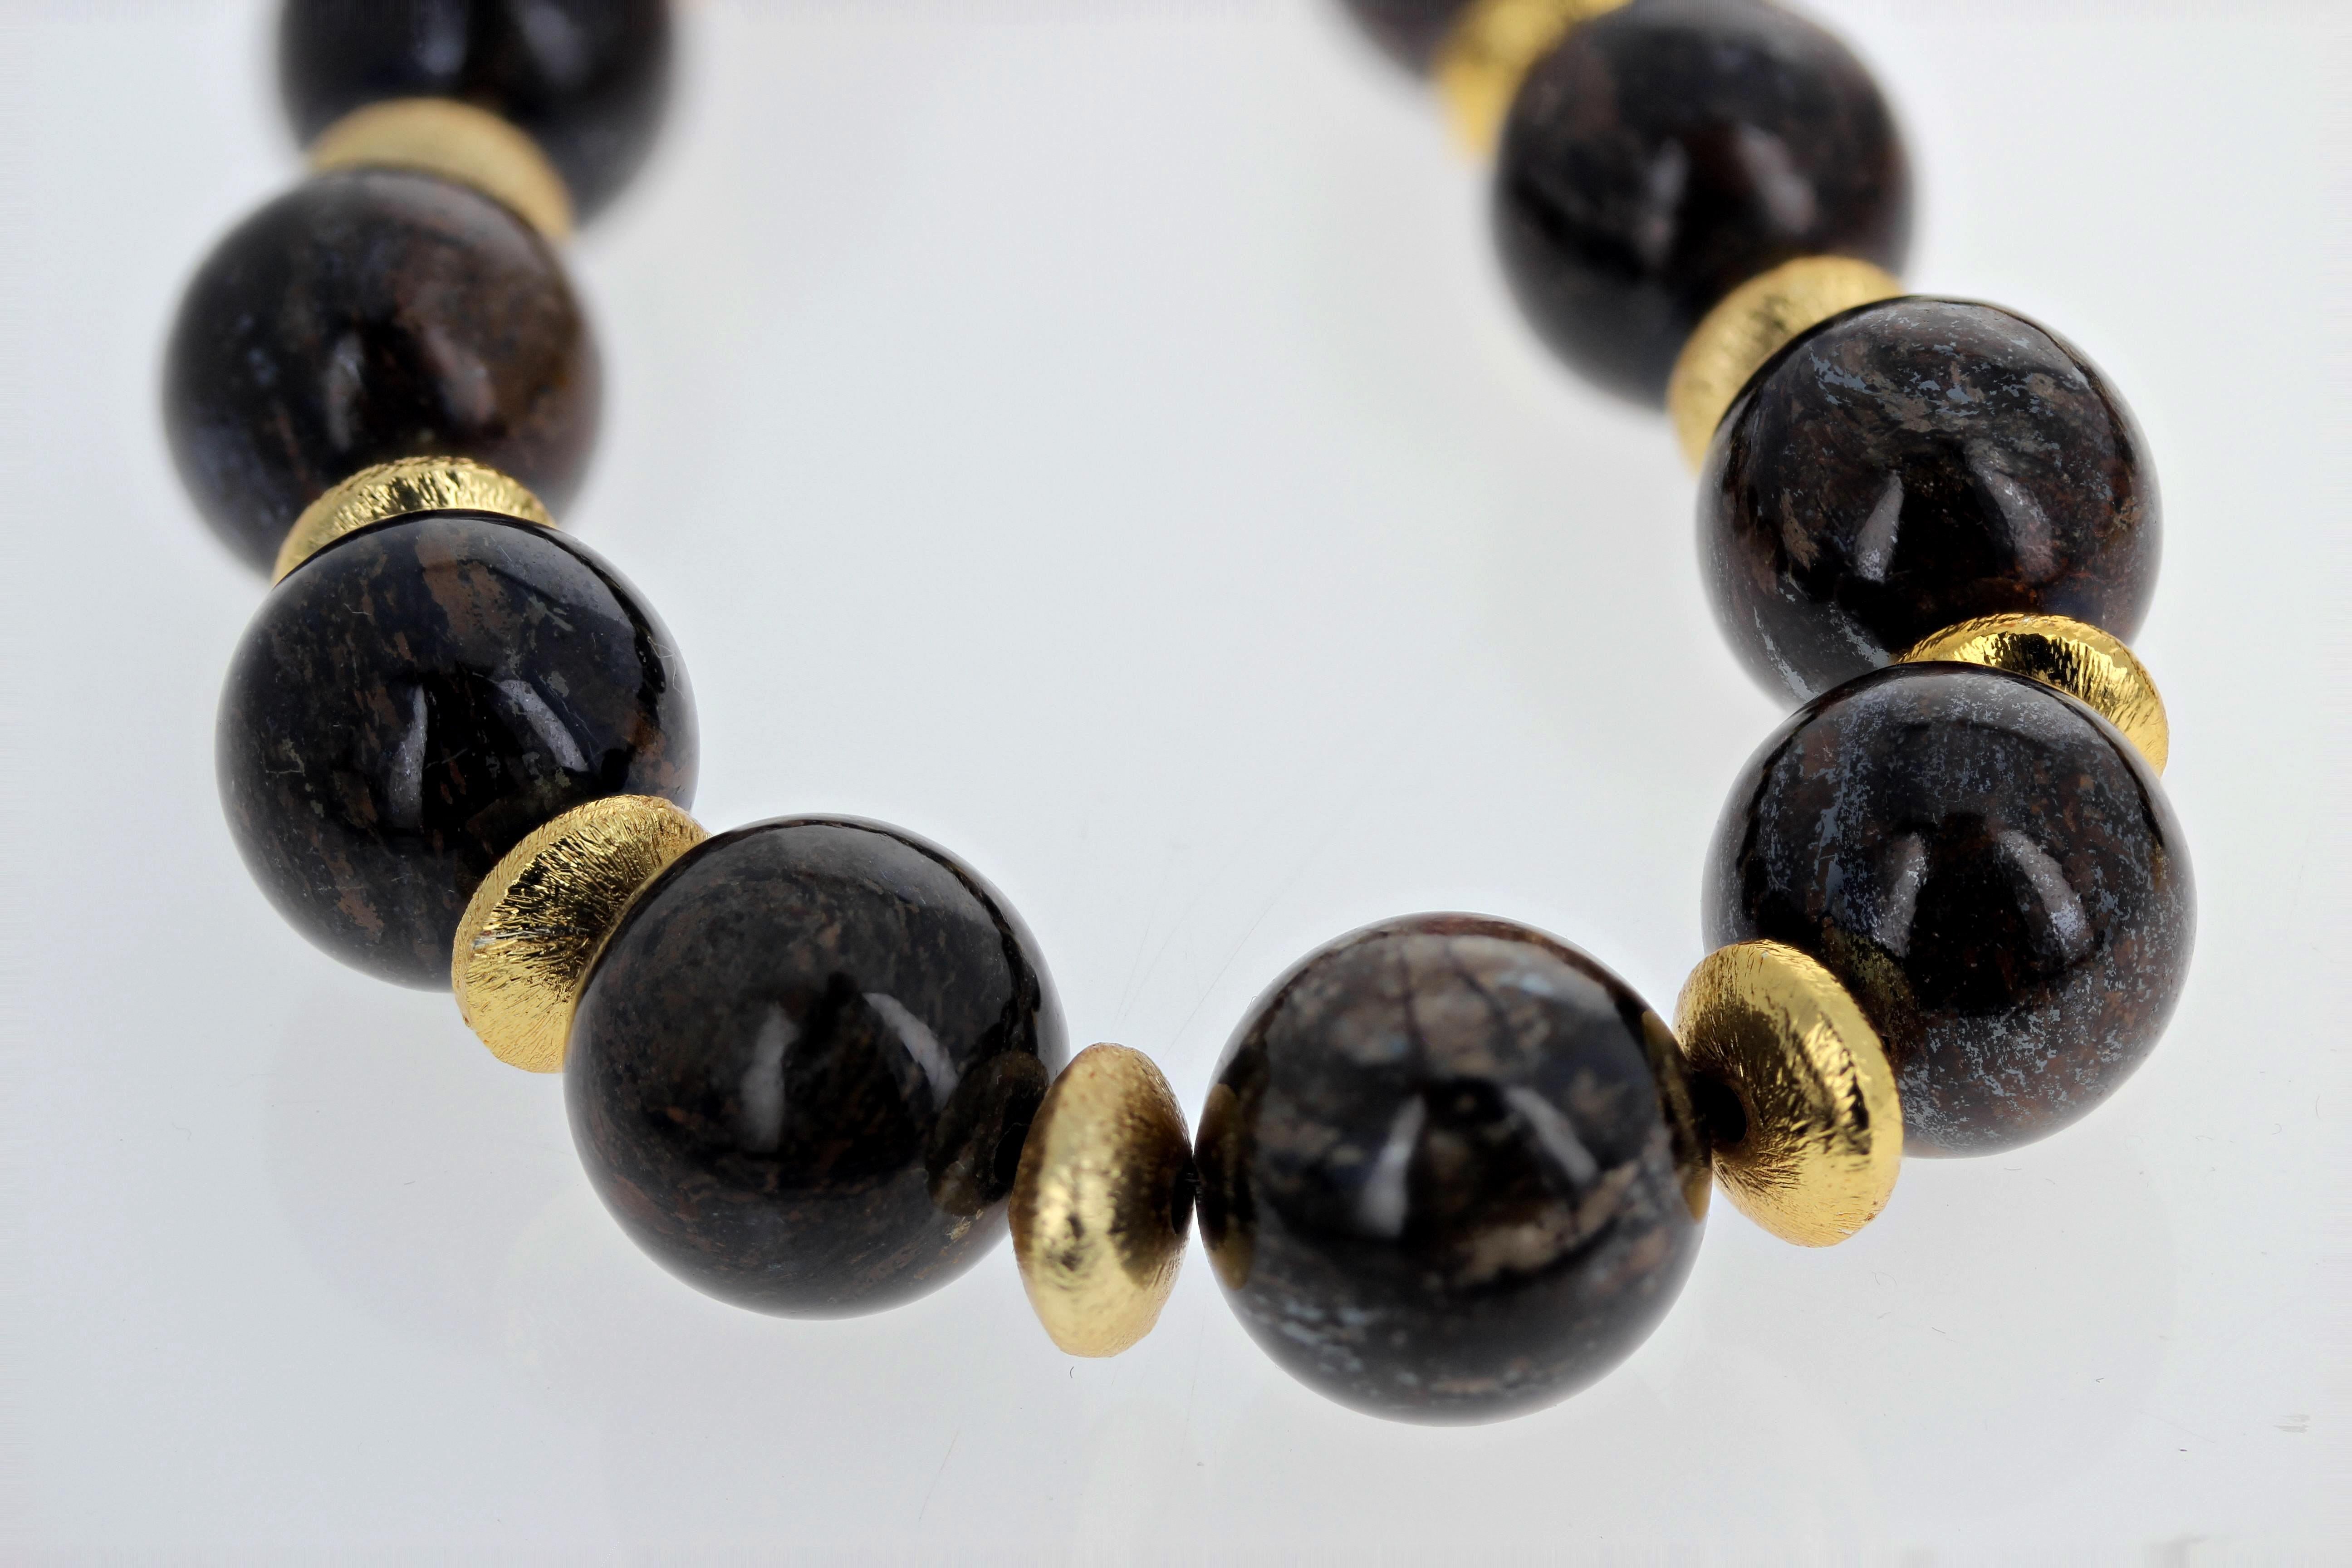 Diese Halskette ist absolut einzigartig und besteht aus echten, hochglanzpolierten, natürlichen Bronzit-Edelsteinen (15 mm), die mit vergoldeten 9-mm-Rondellen verziert sind. Der Bronzit enthält schimmernde Goldwirbel. Die Schließe ist ein